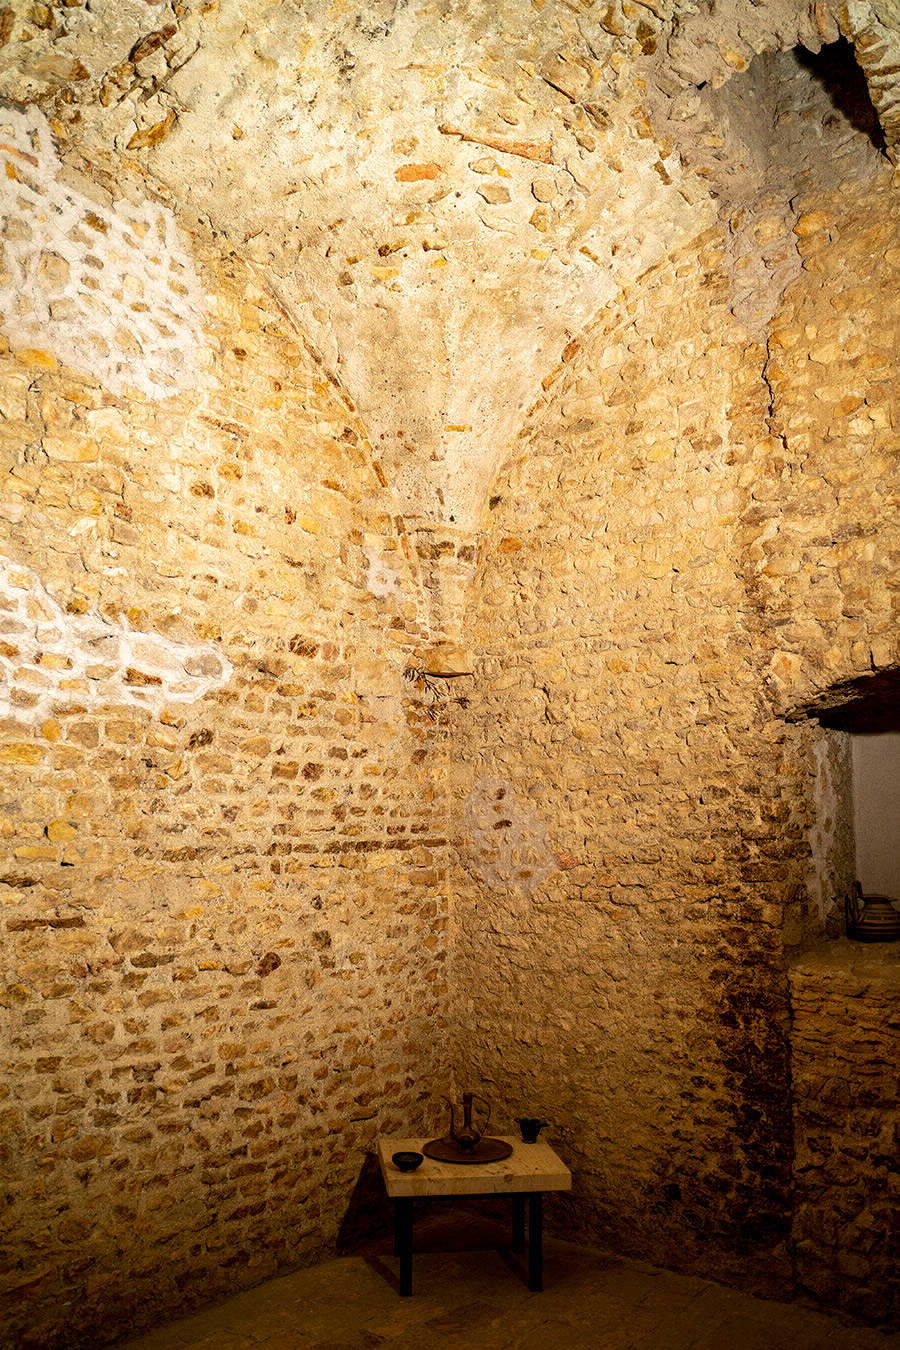 Altri ambienti tra curiosità e arte - La cella domenicana del Castello